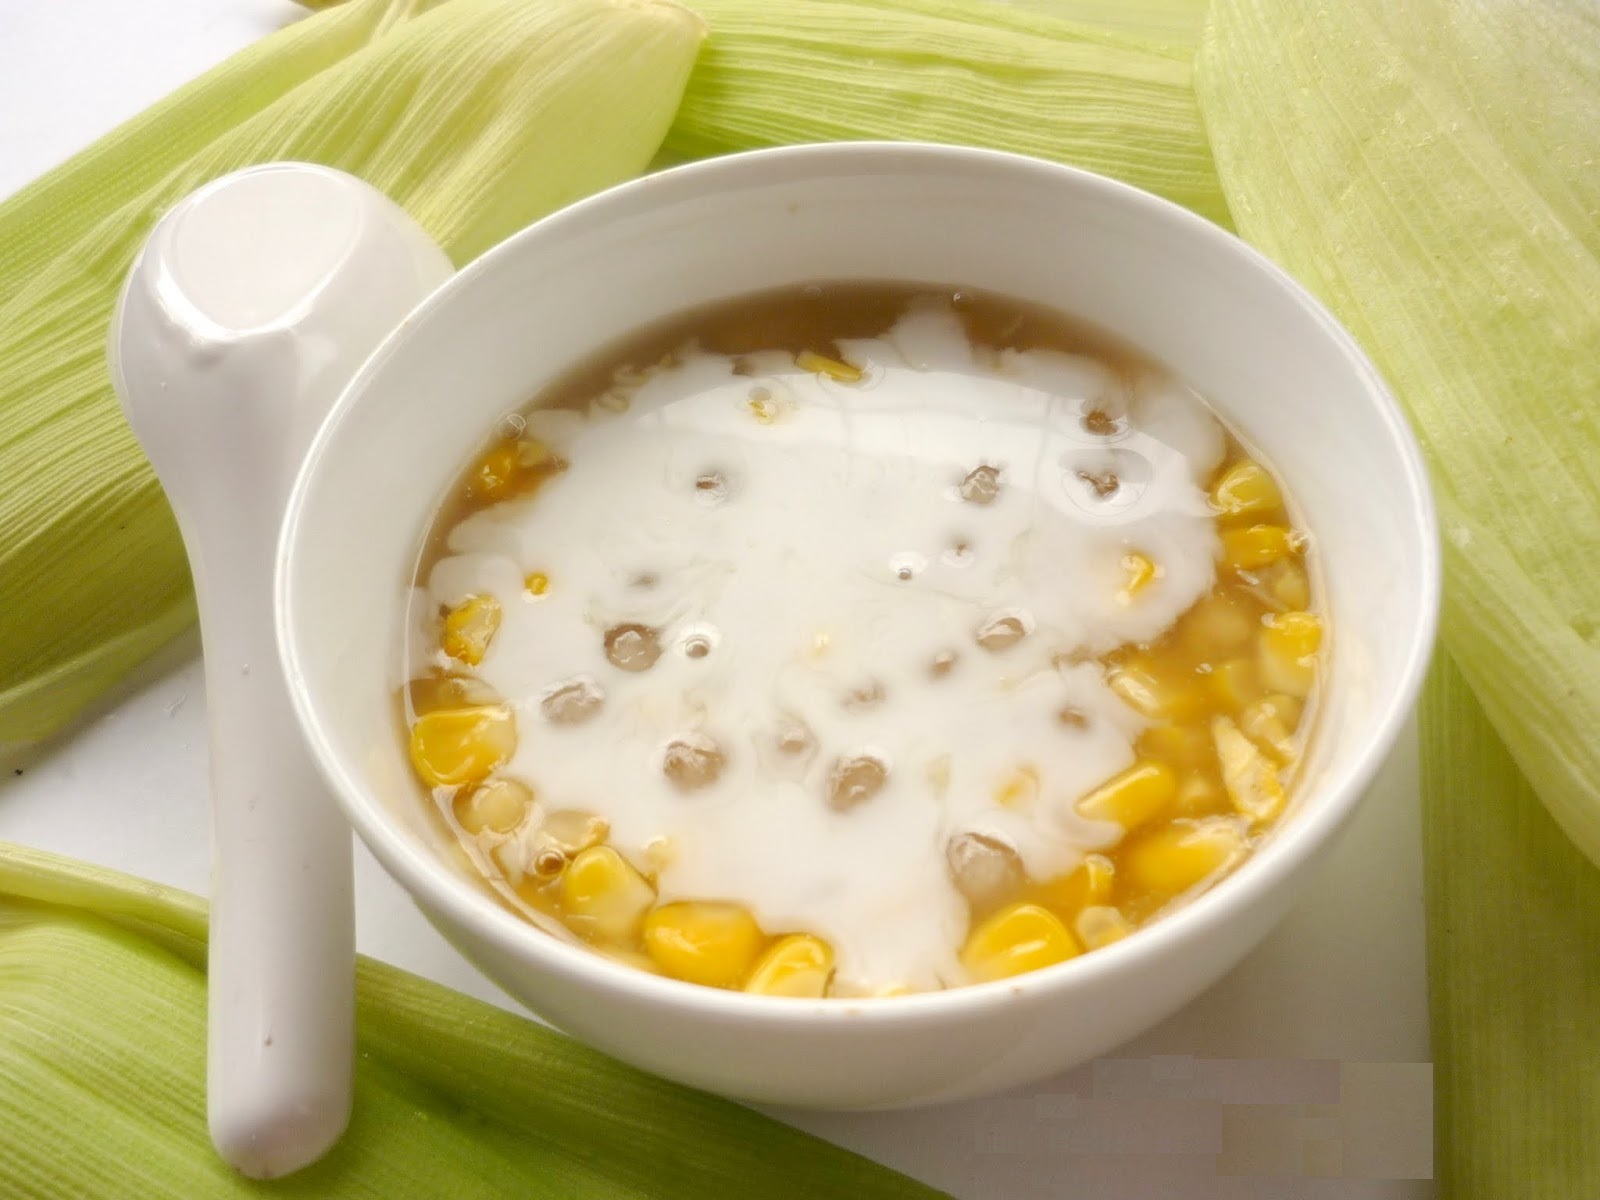 Các món chè ngon nổi tiếng xứ Huế phải nhắc đến món chè bắp béo ngậy nước cốt dừa